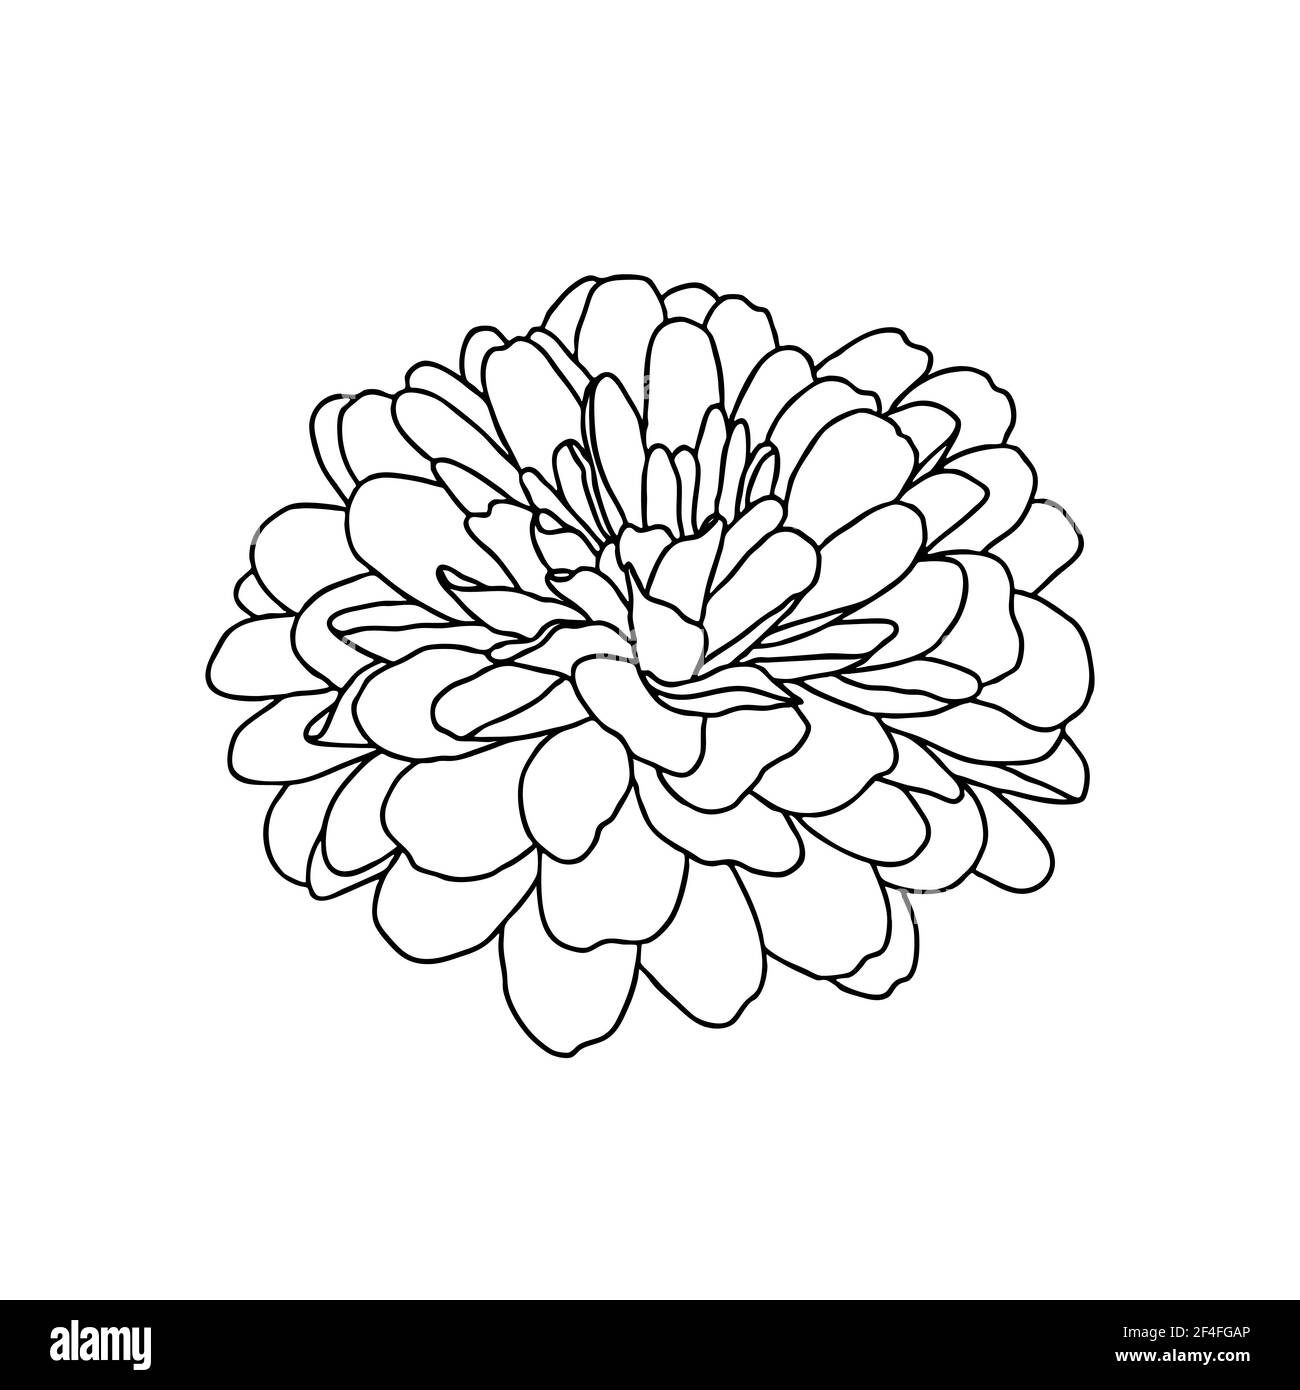 Dessin au trait de la fleur de chrysanthème isolée sur fond blanc. Esquisse dessinée à la main, illustration vectorielle. Élément décoratif pour tatouage, voiture de salutation Illustration de Vecteur